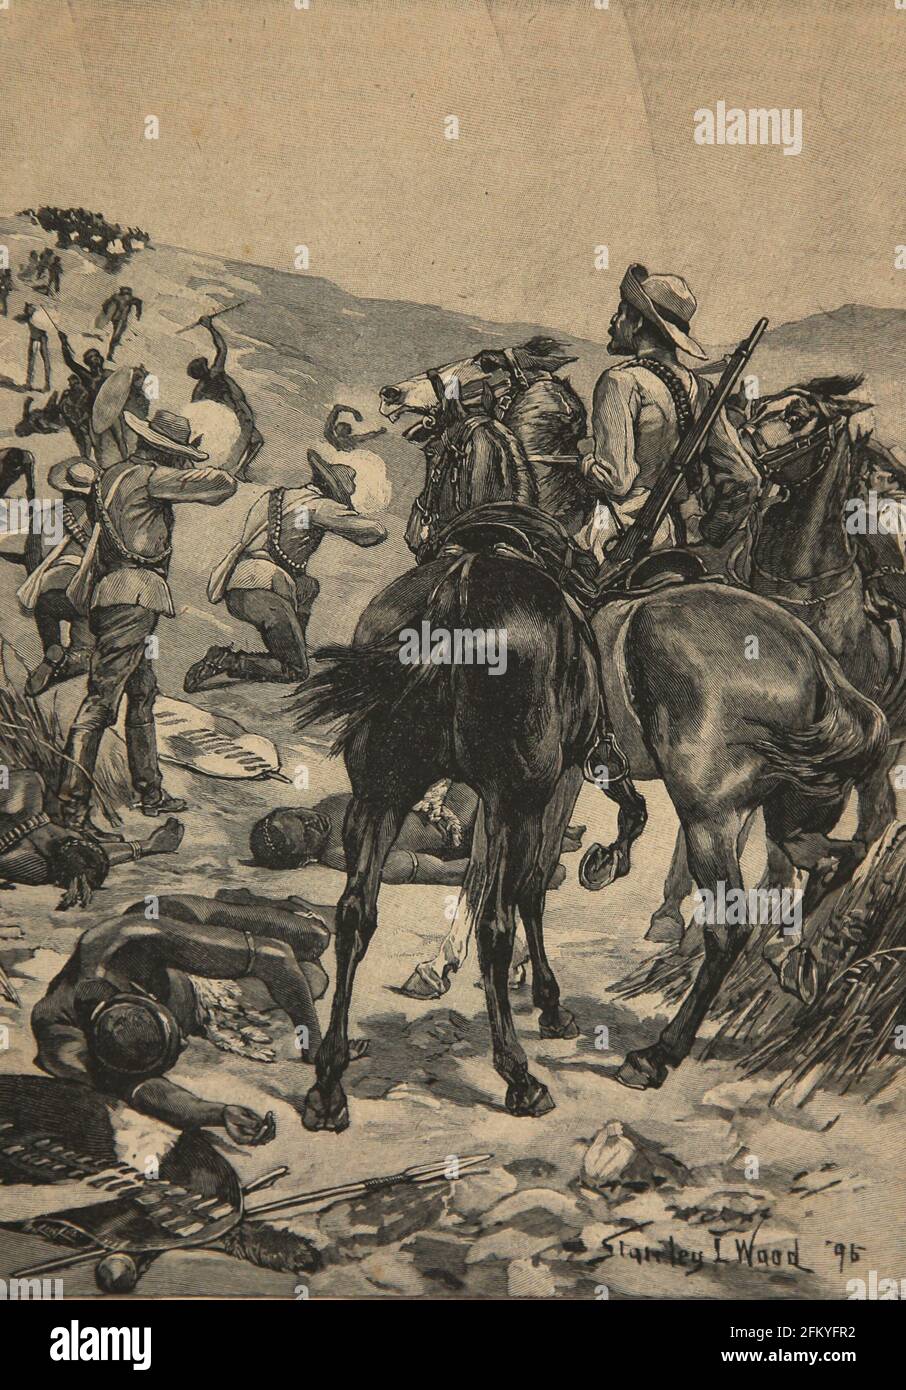 Anglo-Zulu Guerra entre el Imperio Británico y el Reino Zulú, 1879. Combate. Ilustración Ibérica, 1898. Foto de stock